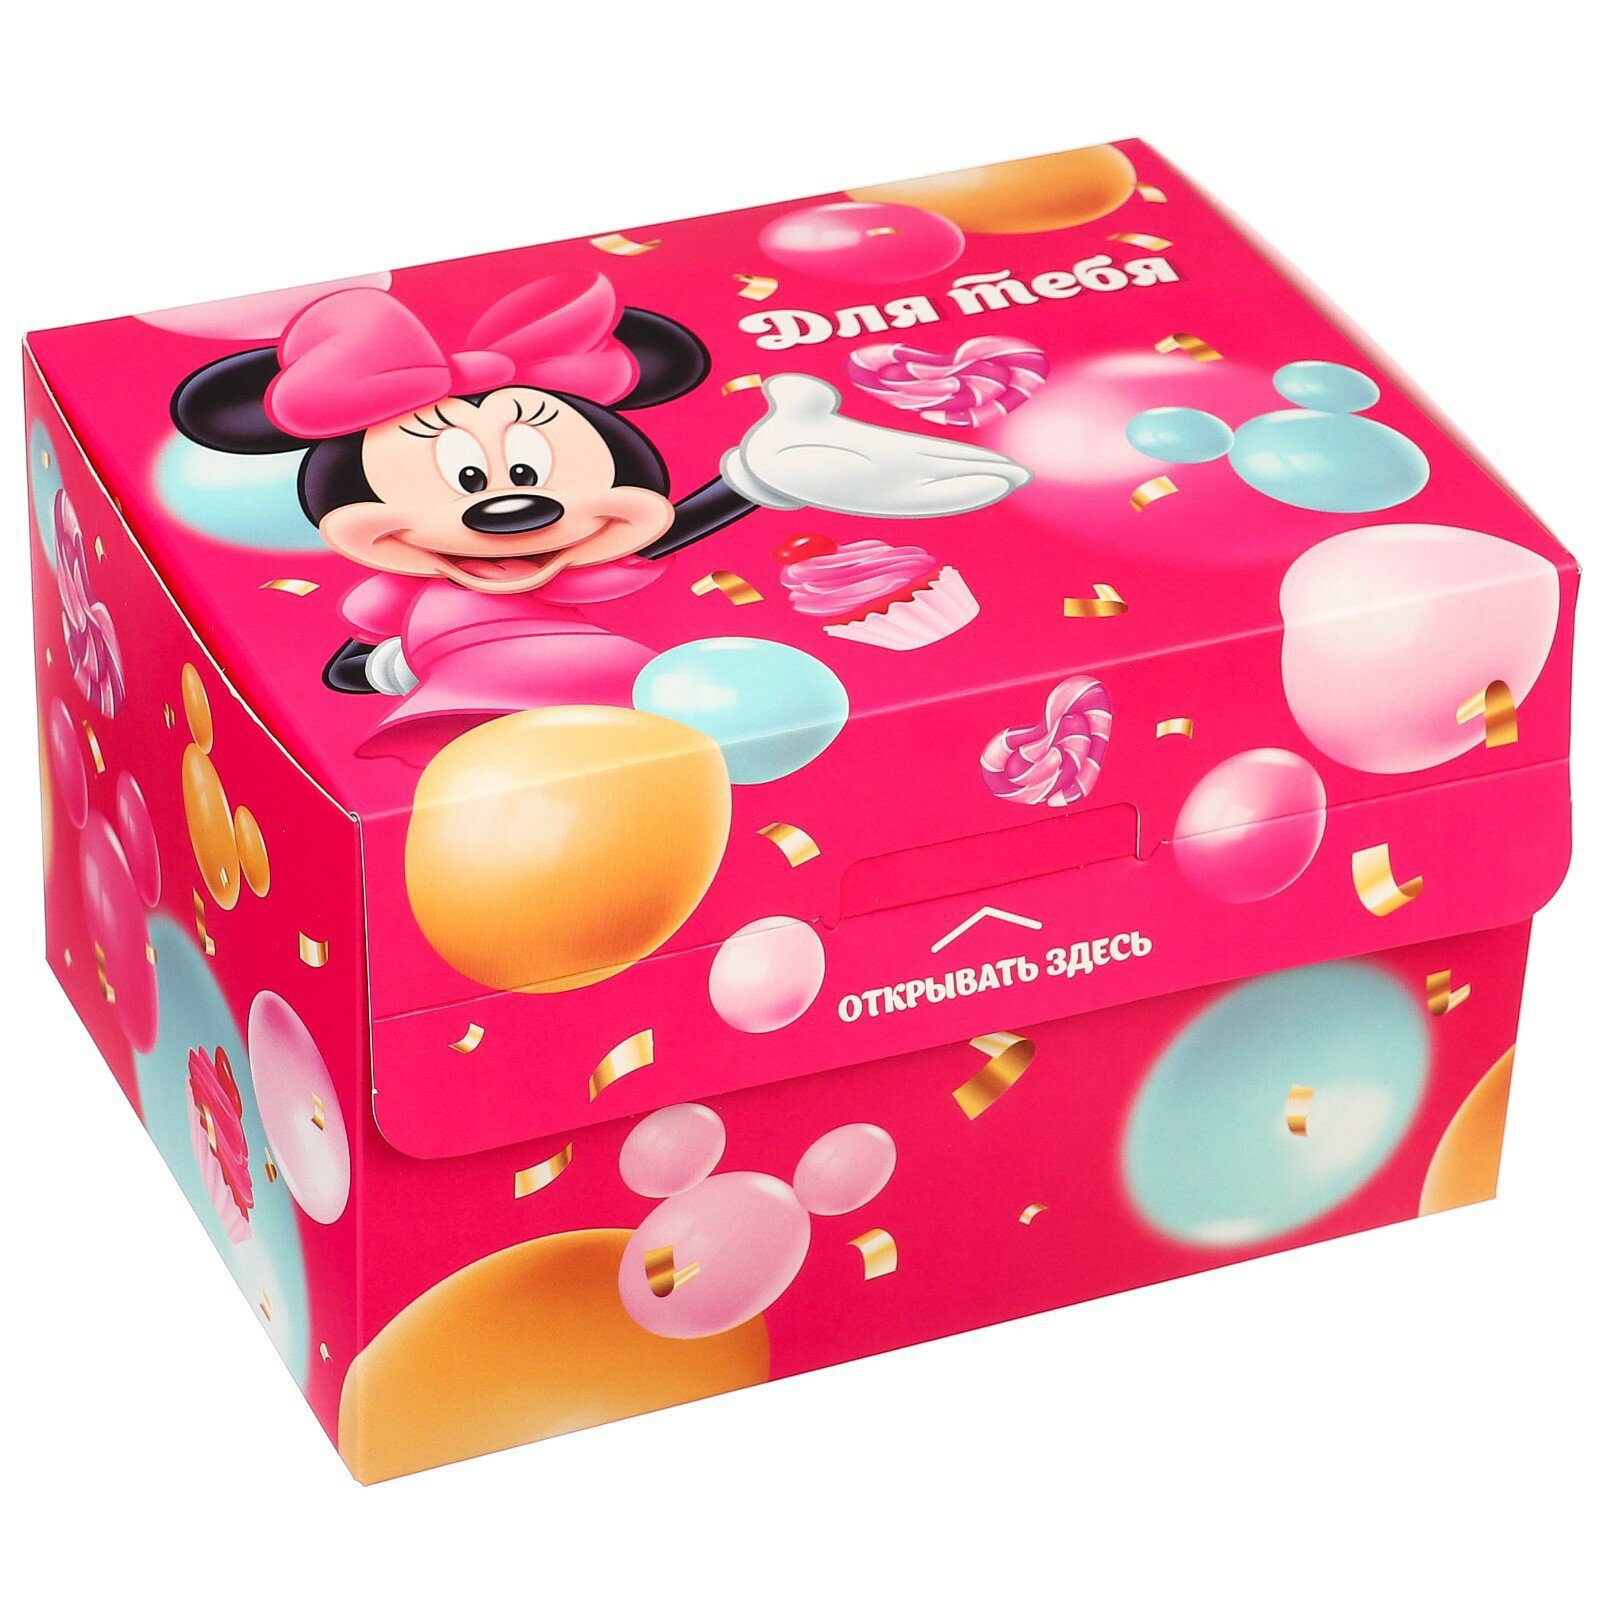 Подарочная коробка с сюрпризом "Минни" от Disney